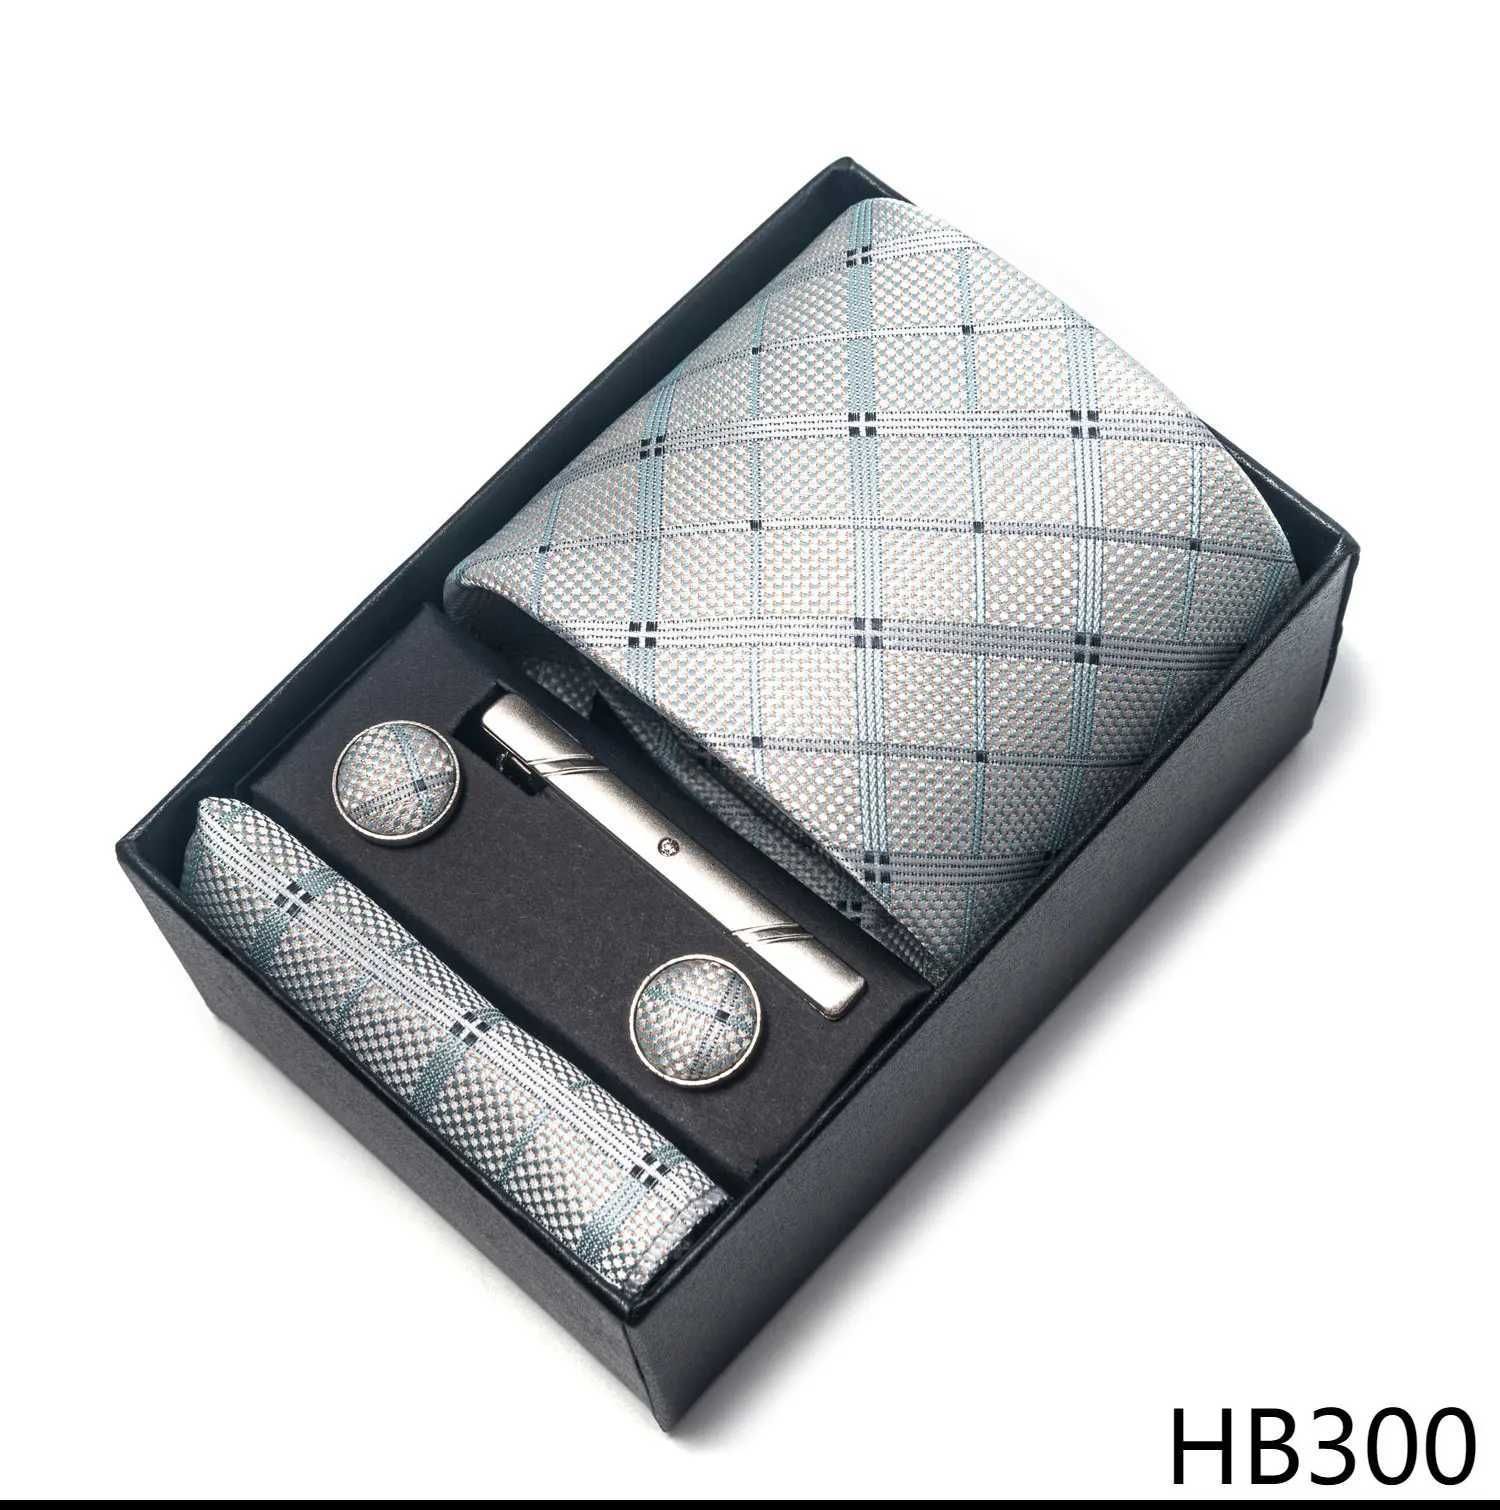 HB300